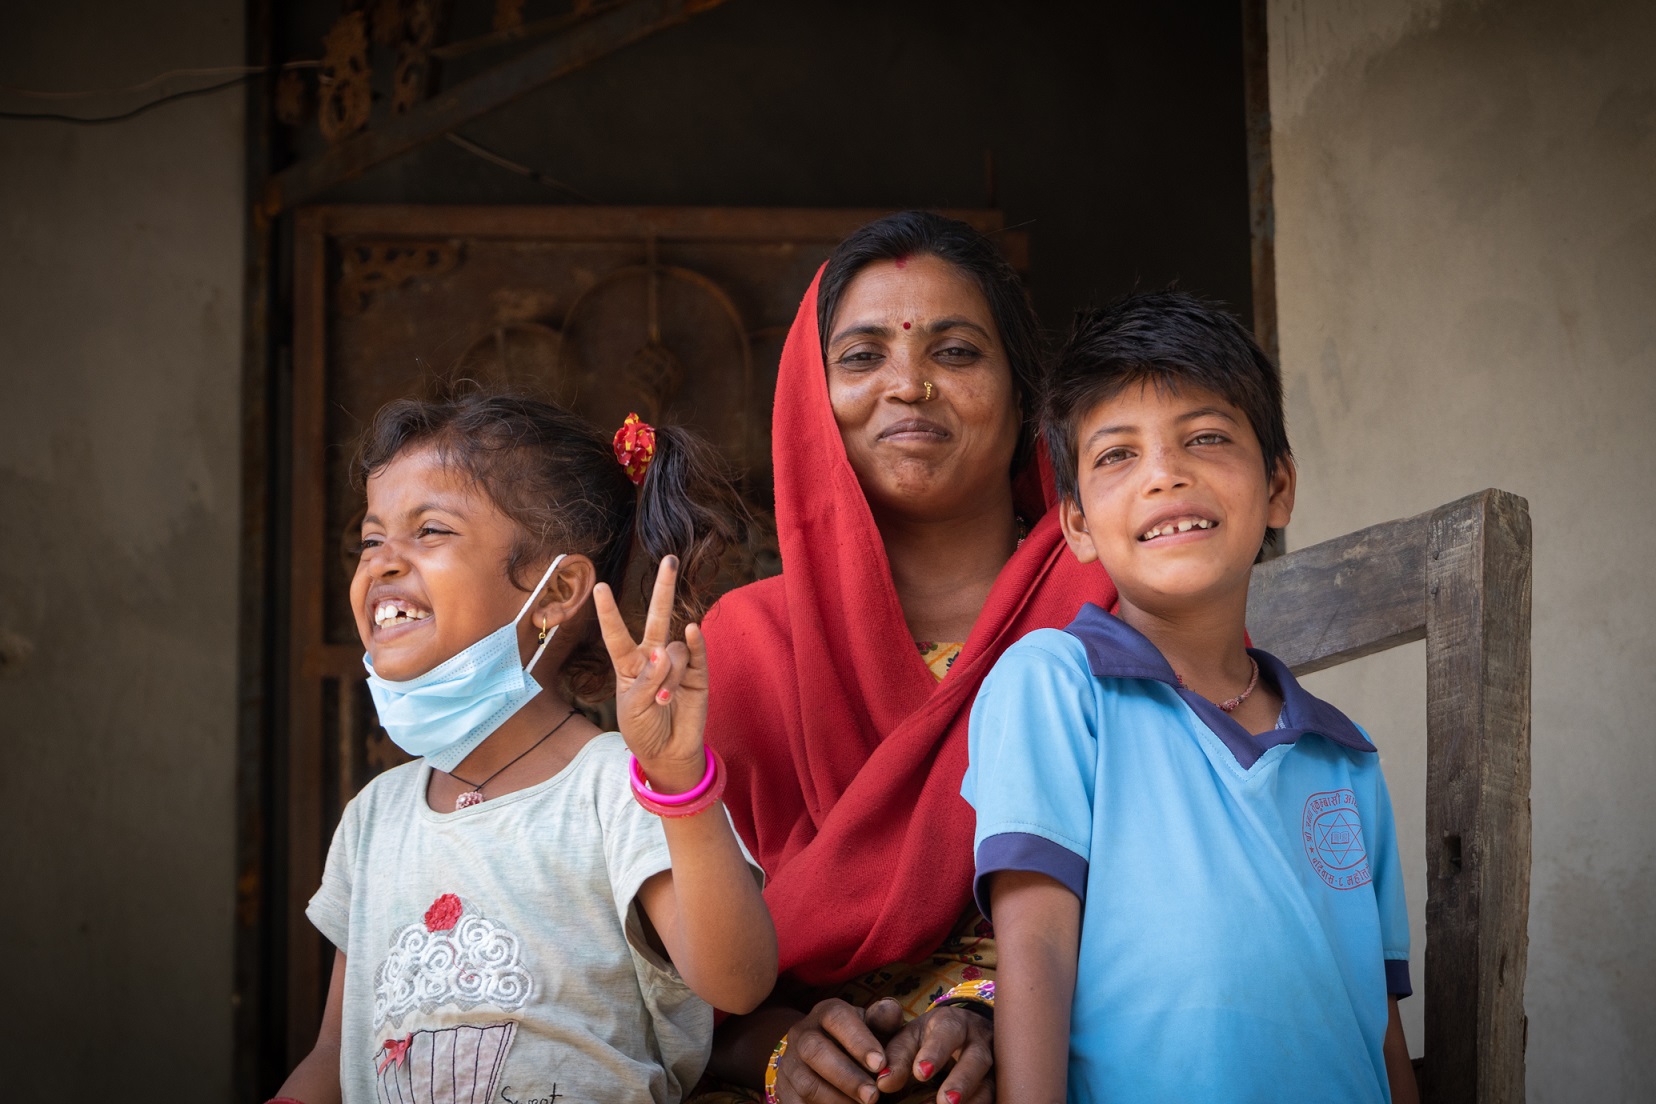 Punaiseen huiviin pukeutunut nepalilainen äiti ja kaksi lastaan poseeraavat kameralle.